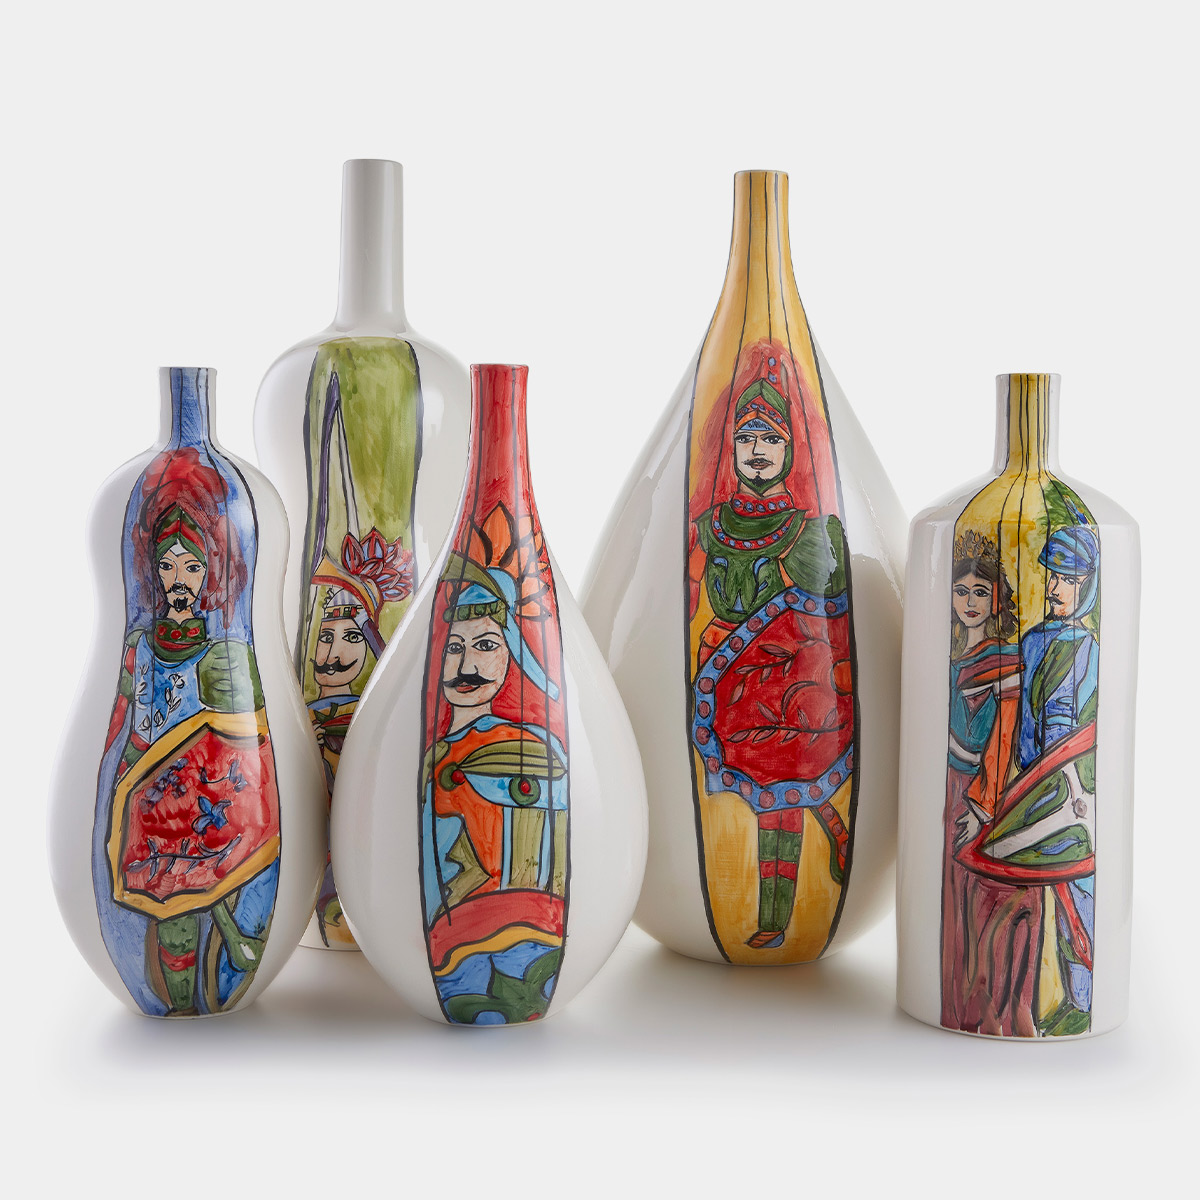 Bottiglia in ceramica Pupo curve, M by Artefice Atelier